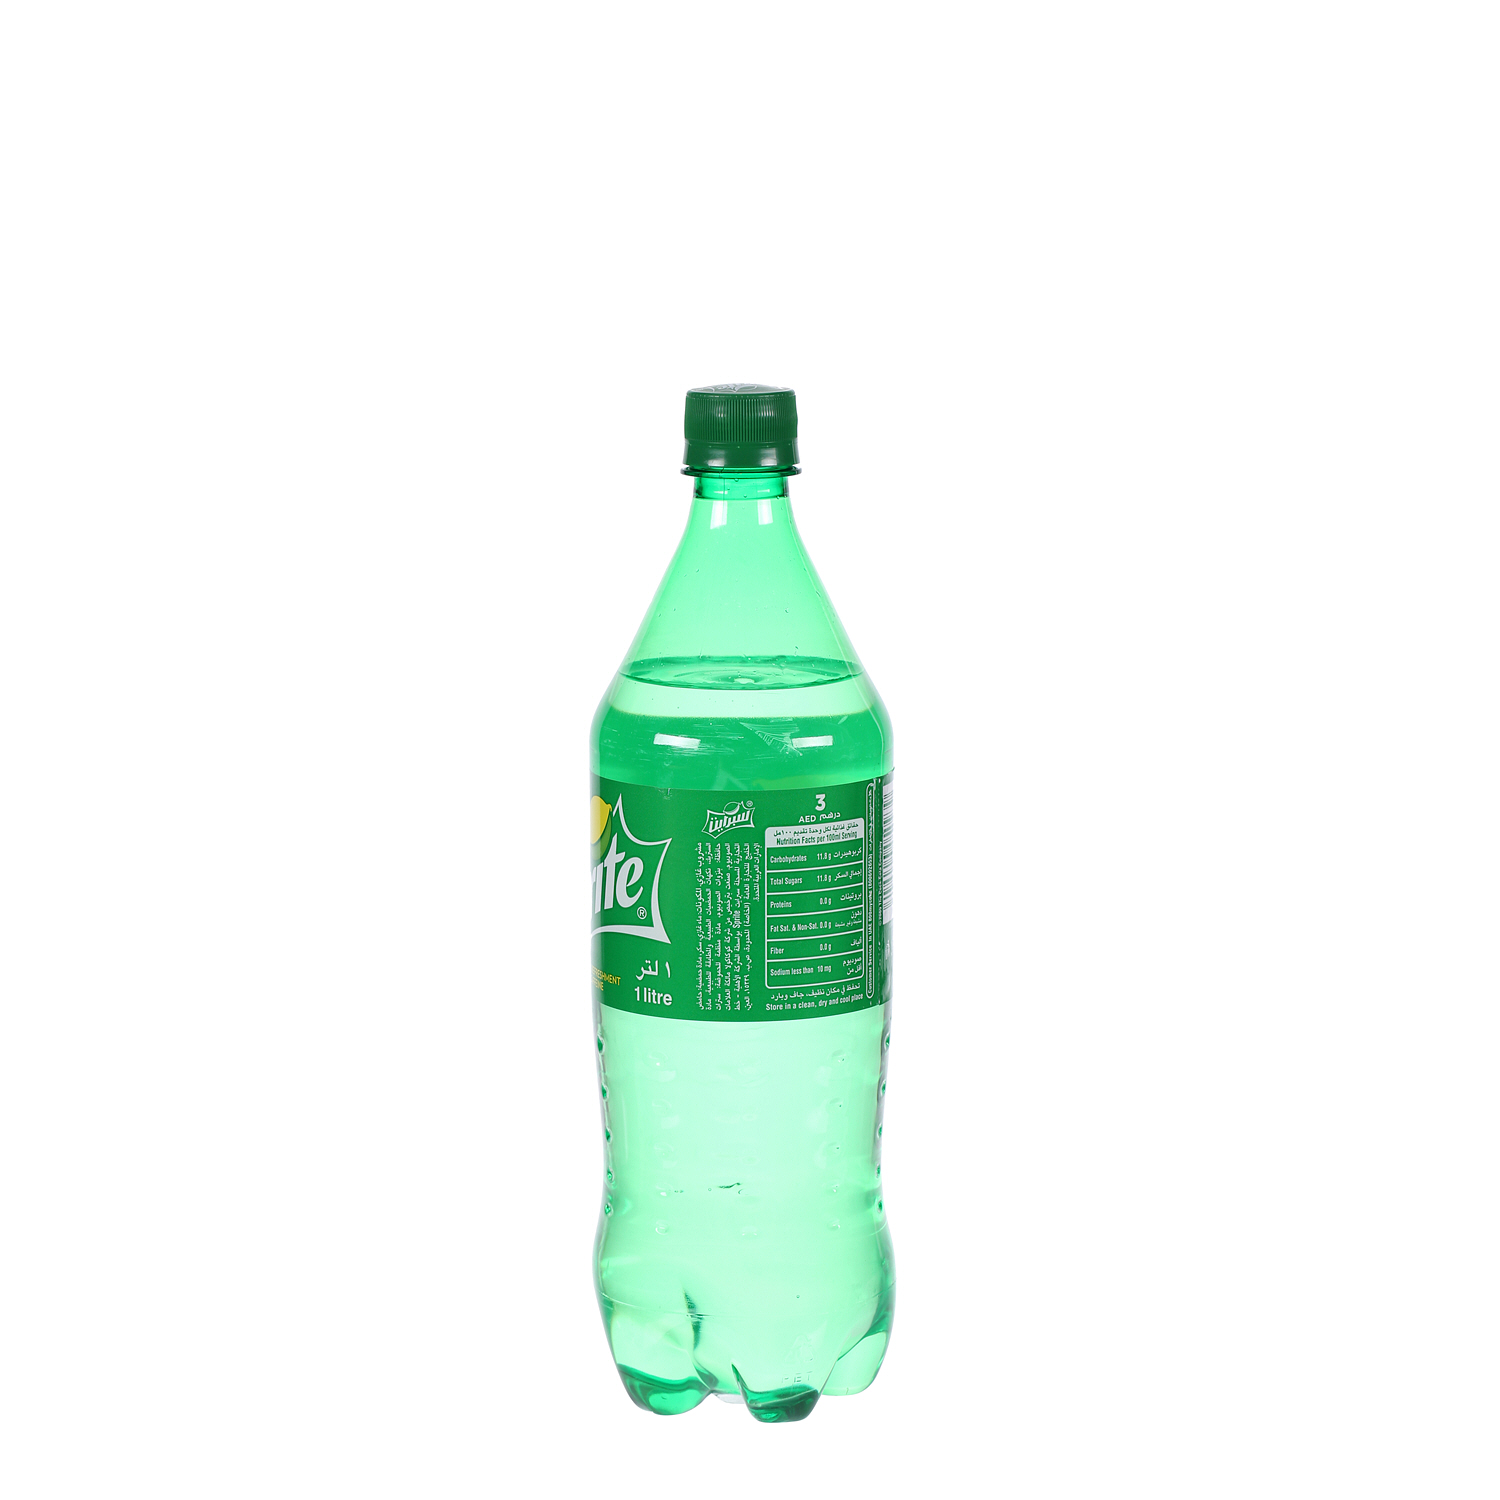 Sprite Plastic Bottle 1Ltr